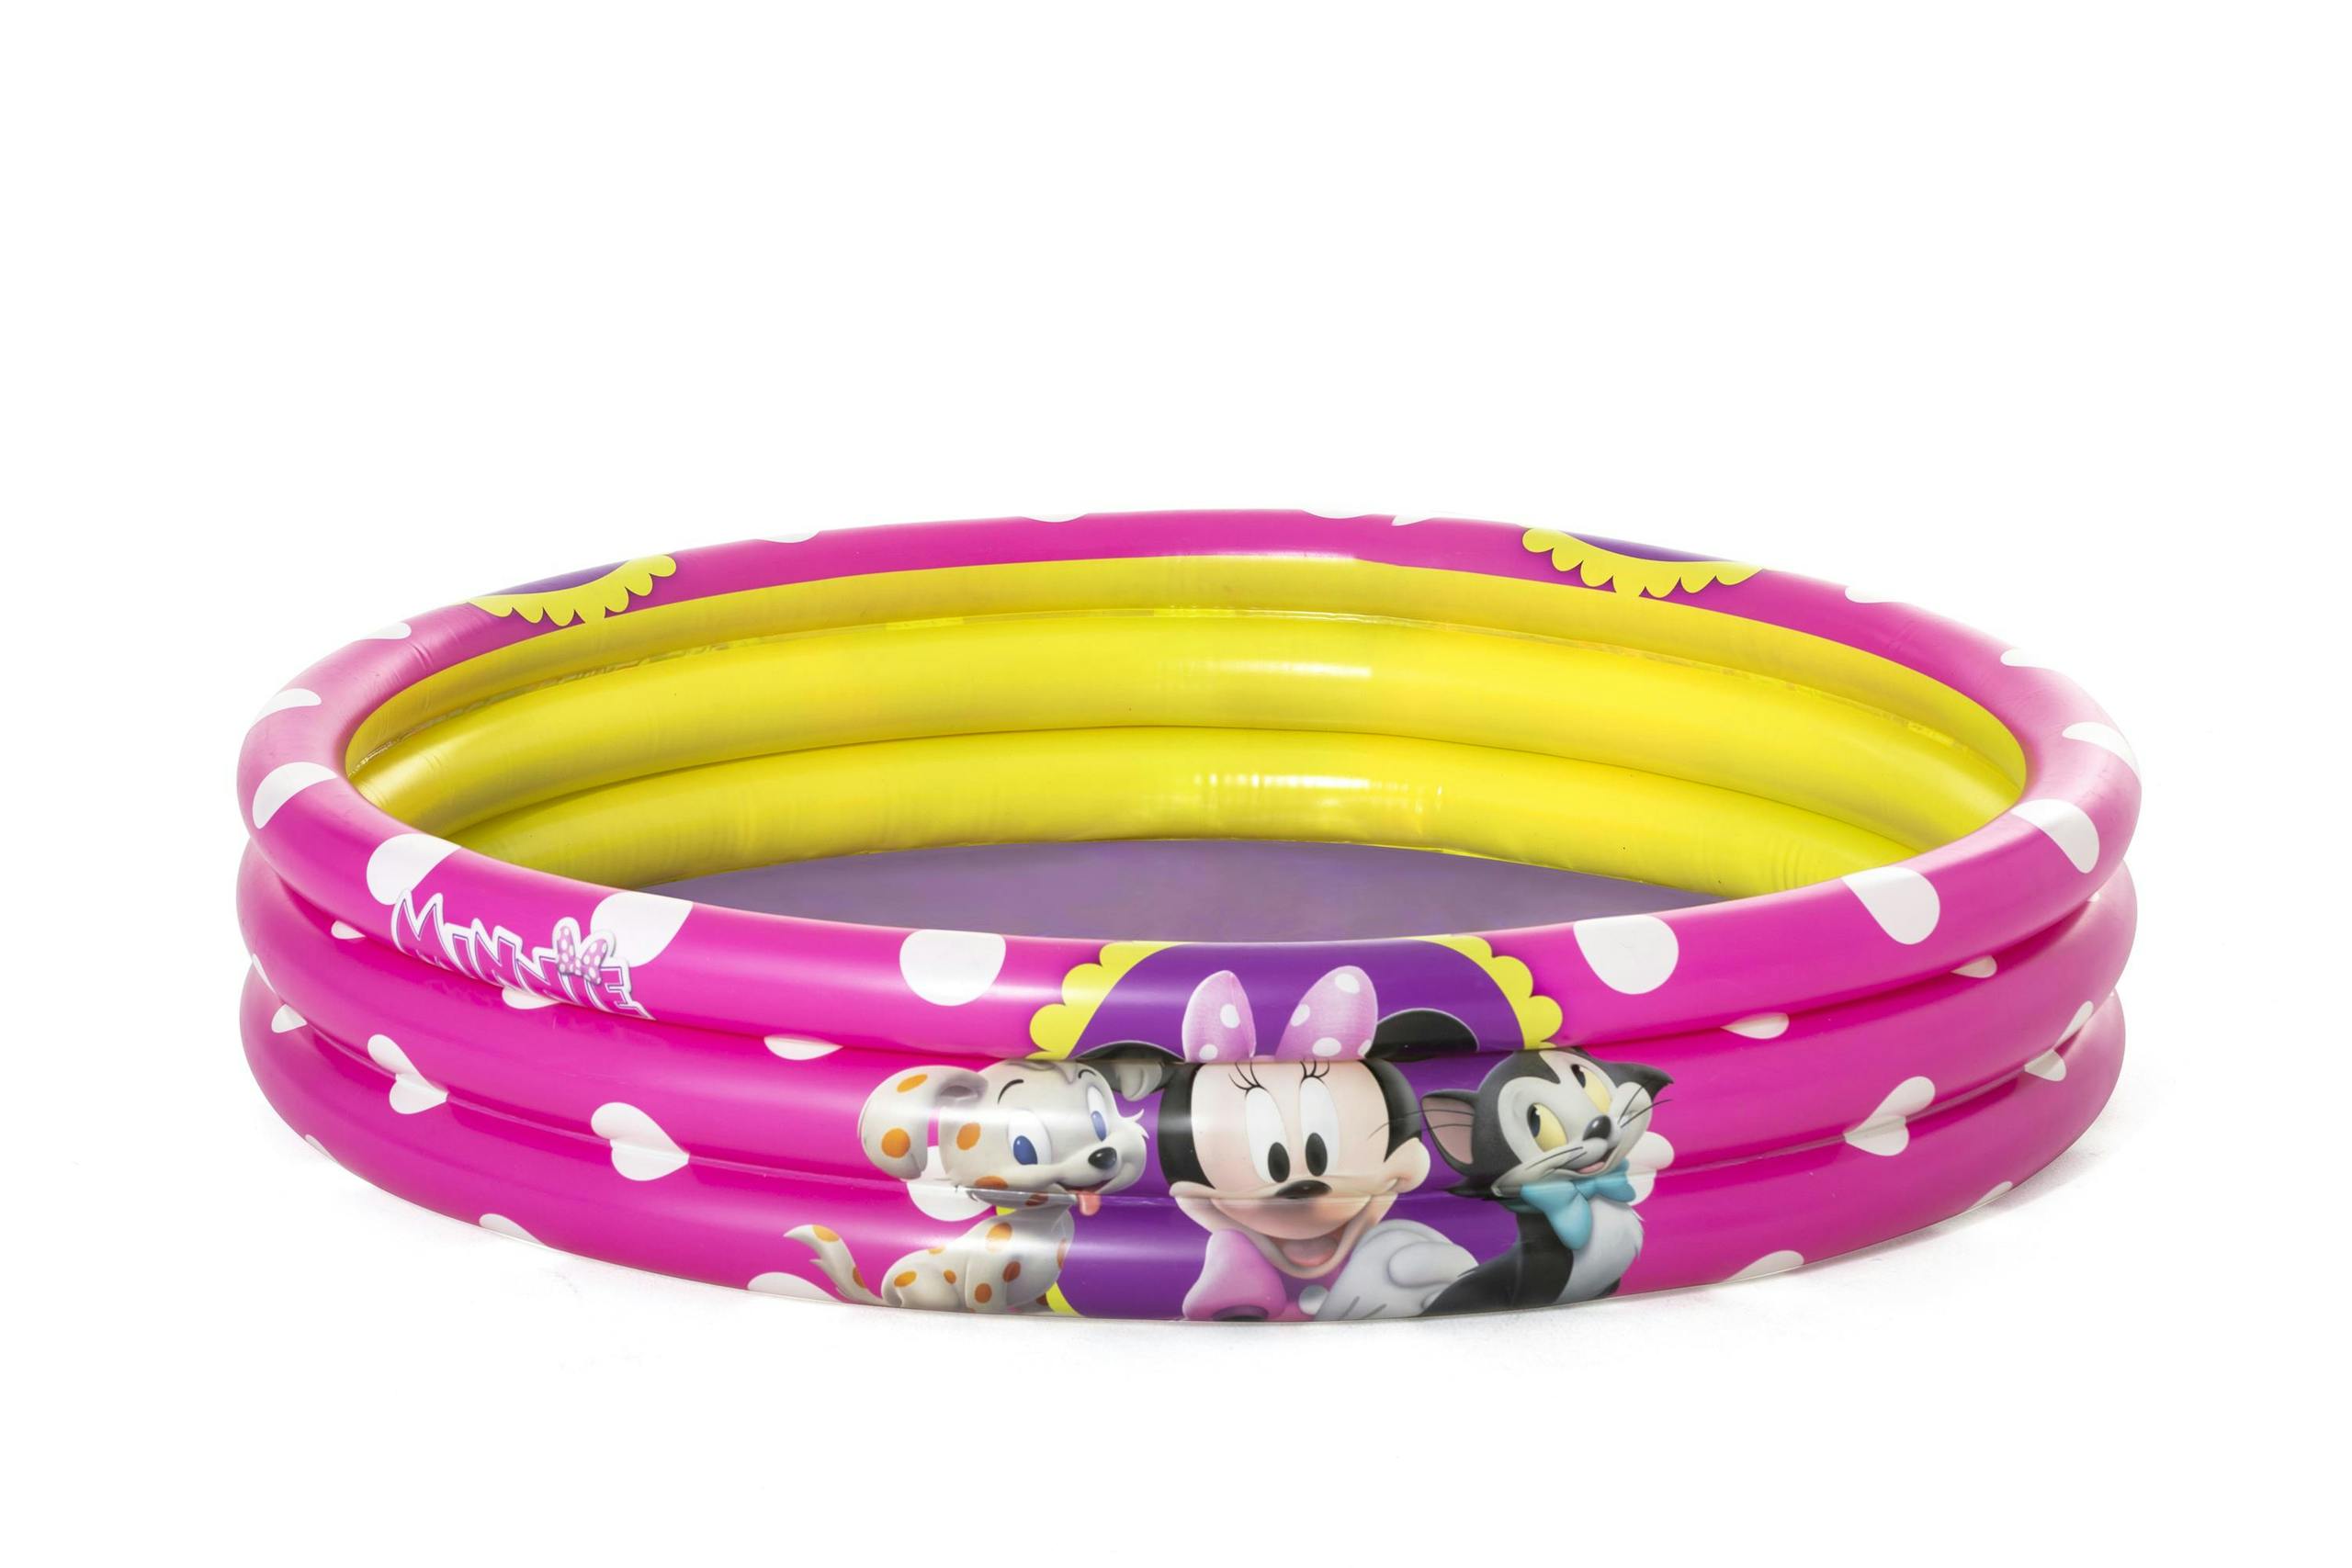 Bestway Piscine Ronde pour enfants - Minnie Mouse